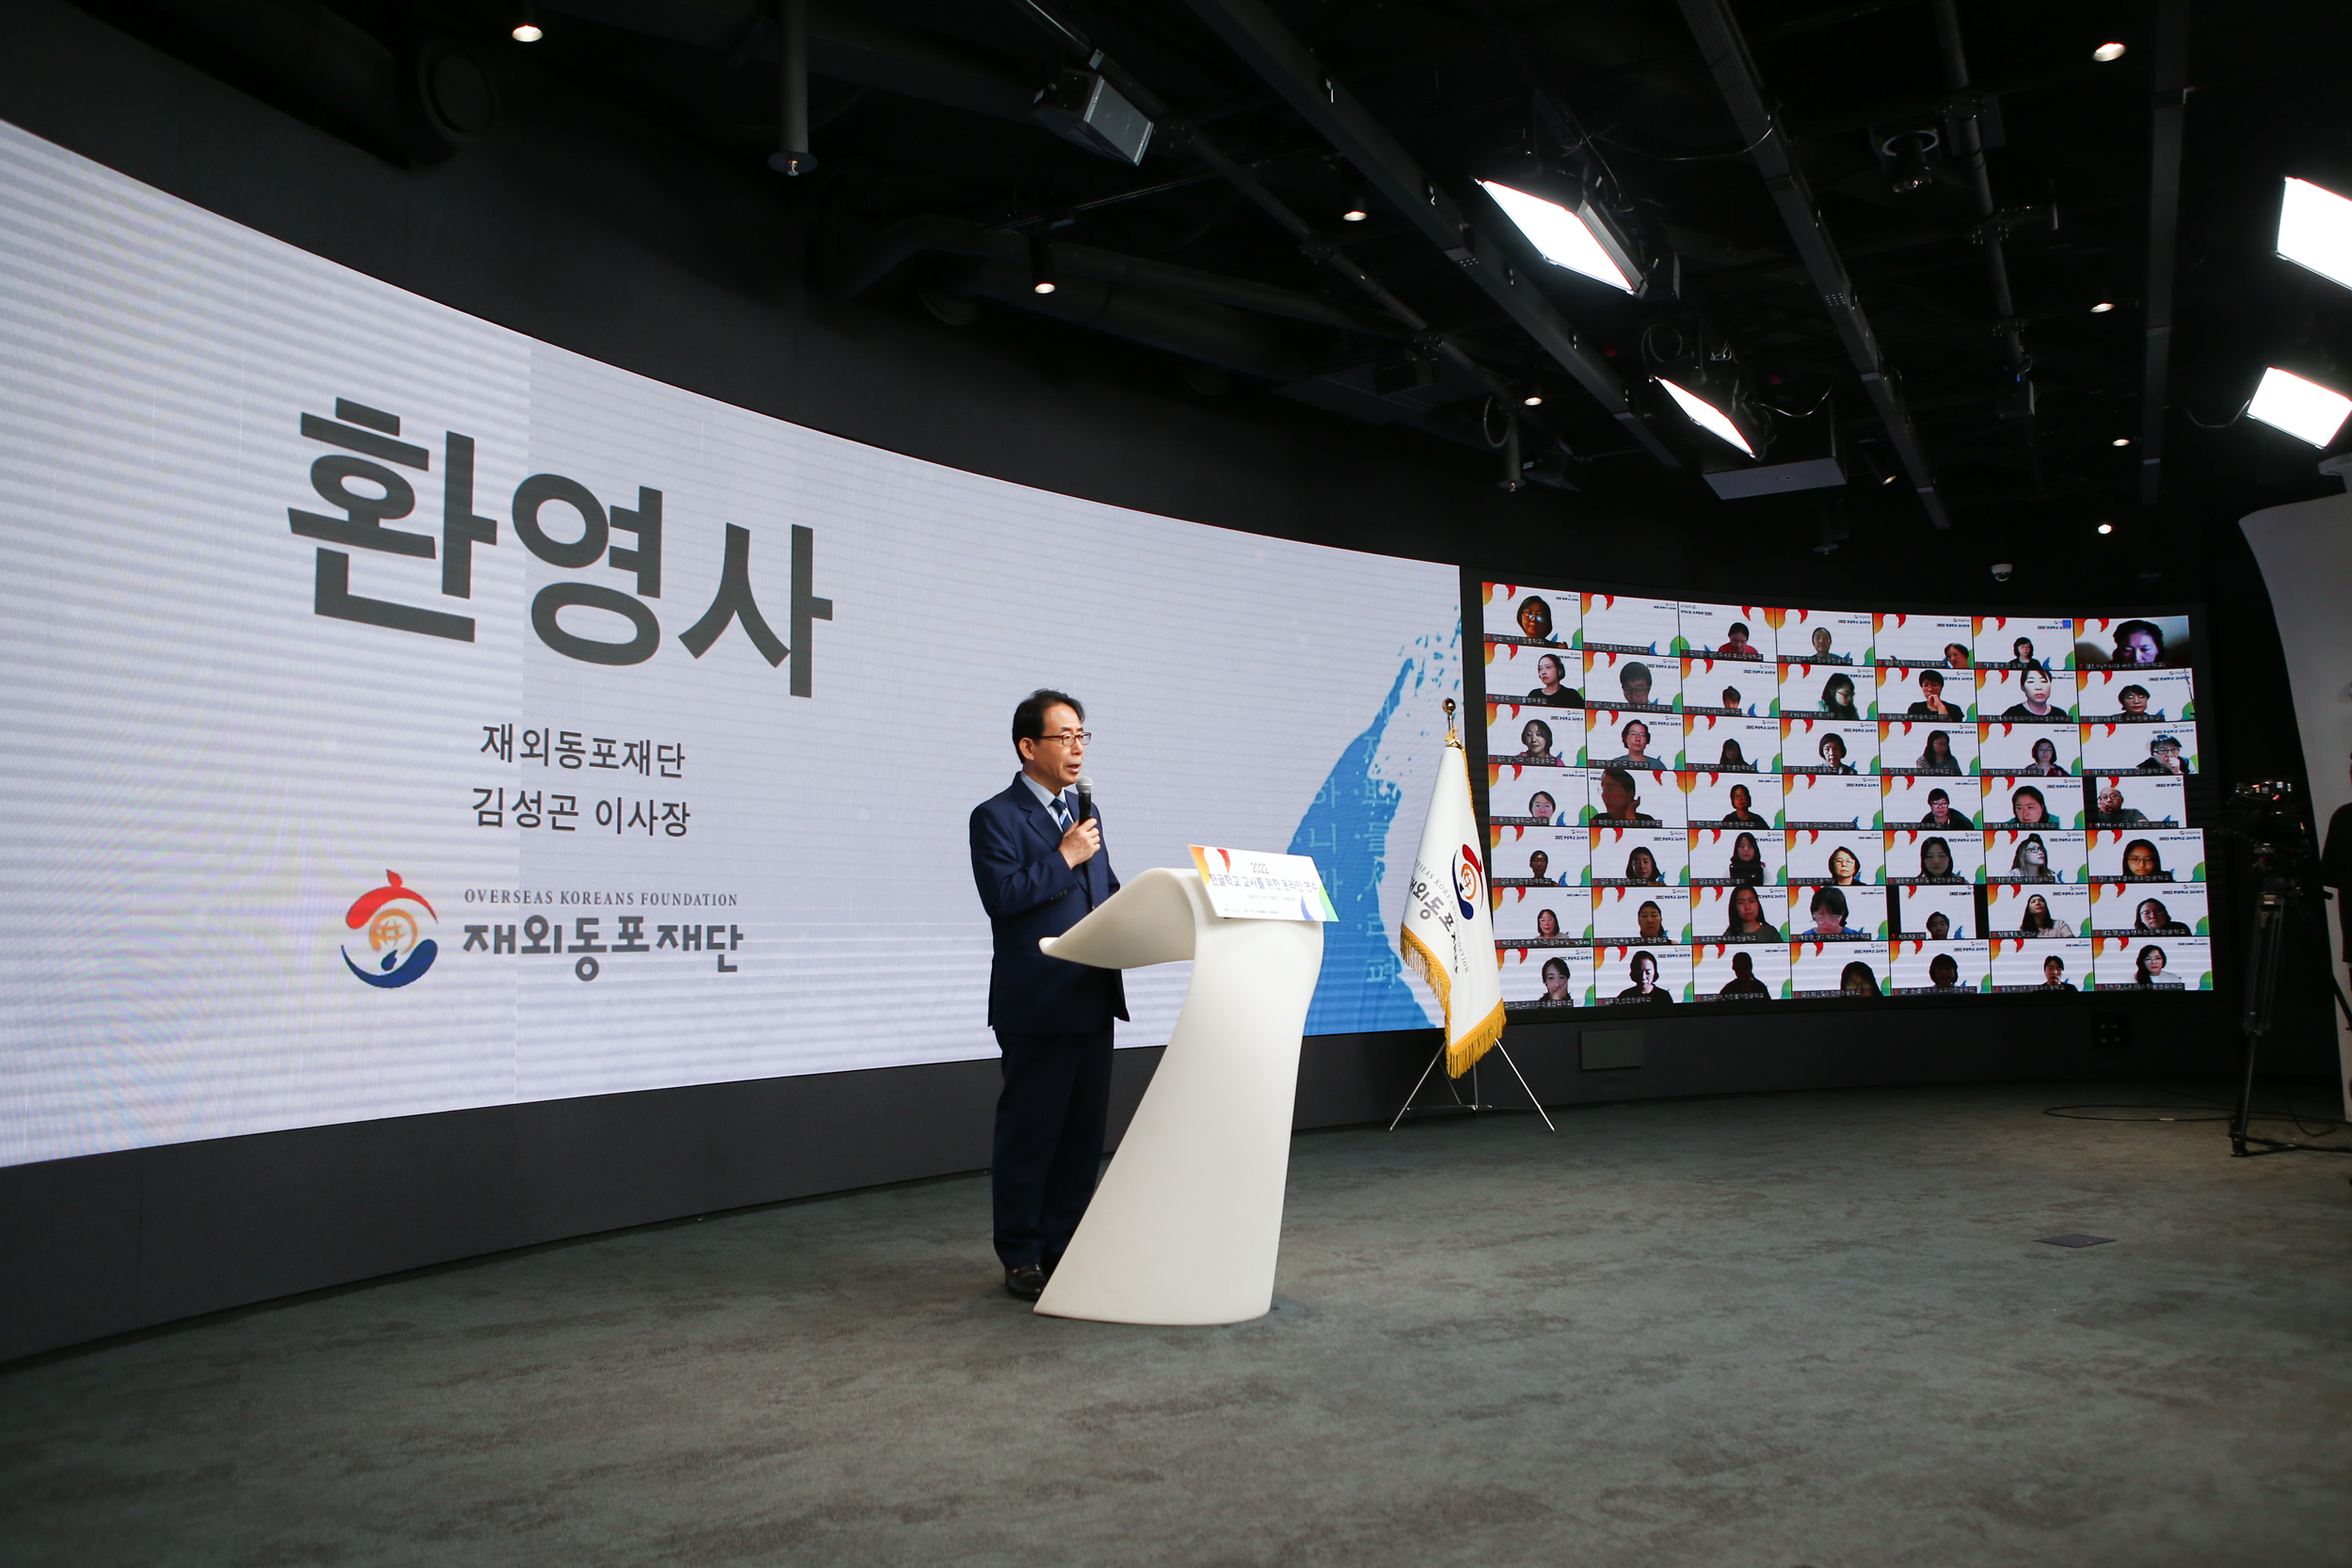 Приветственное слово президента на церемонии открытия онлайн-стажировки для учителей школы хангыля